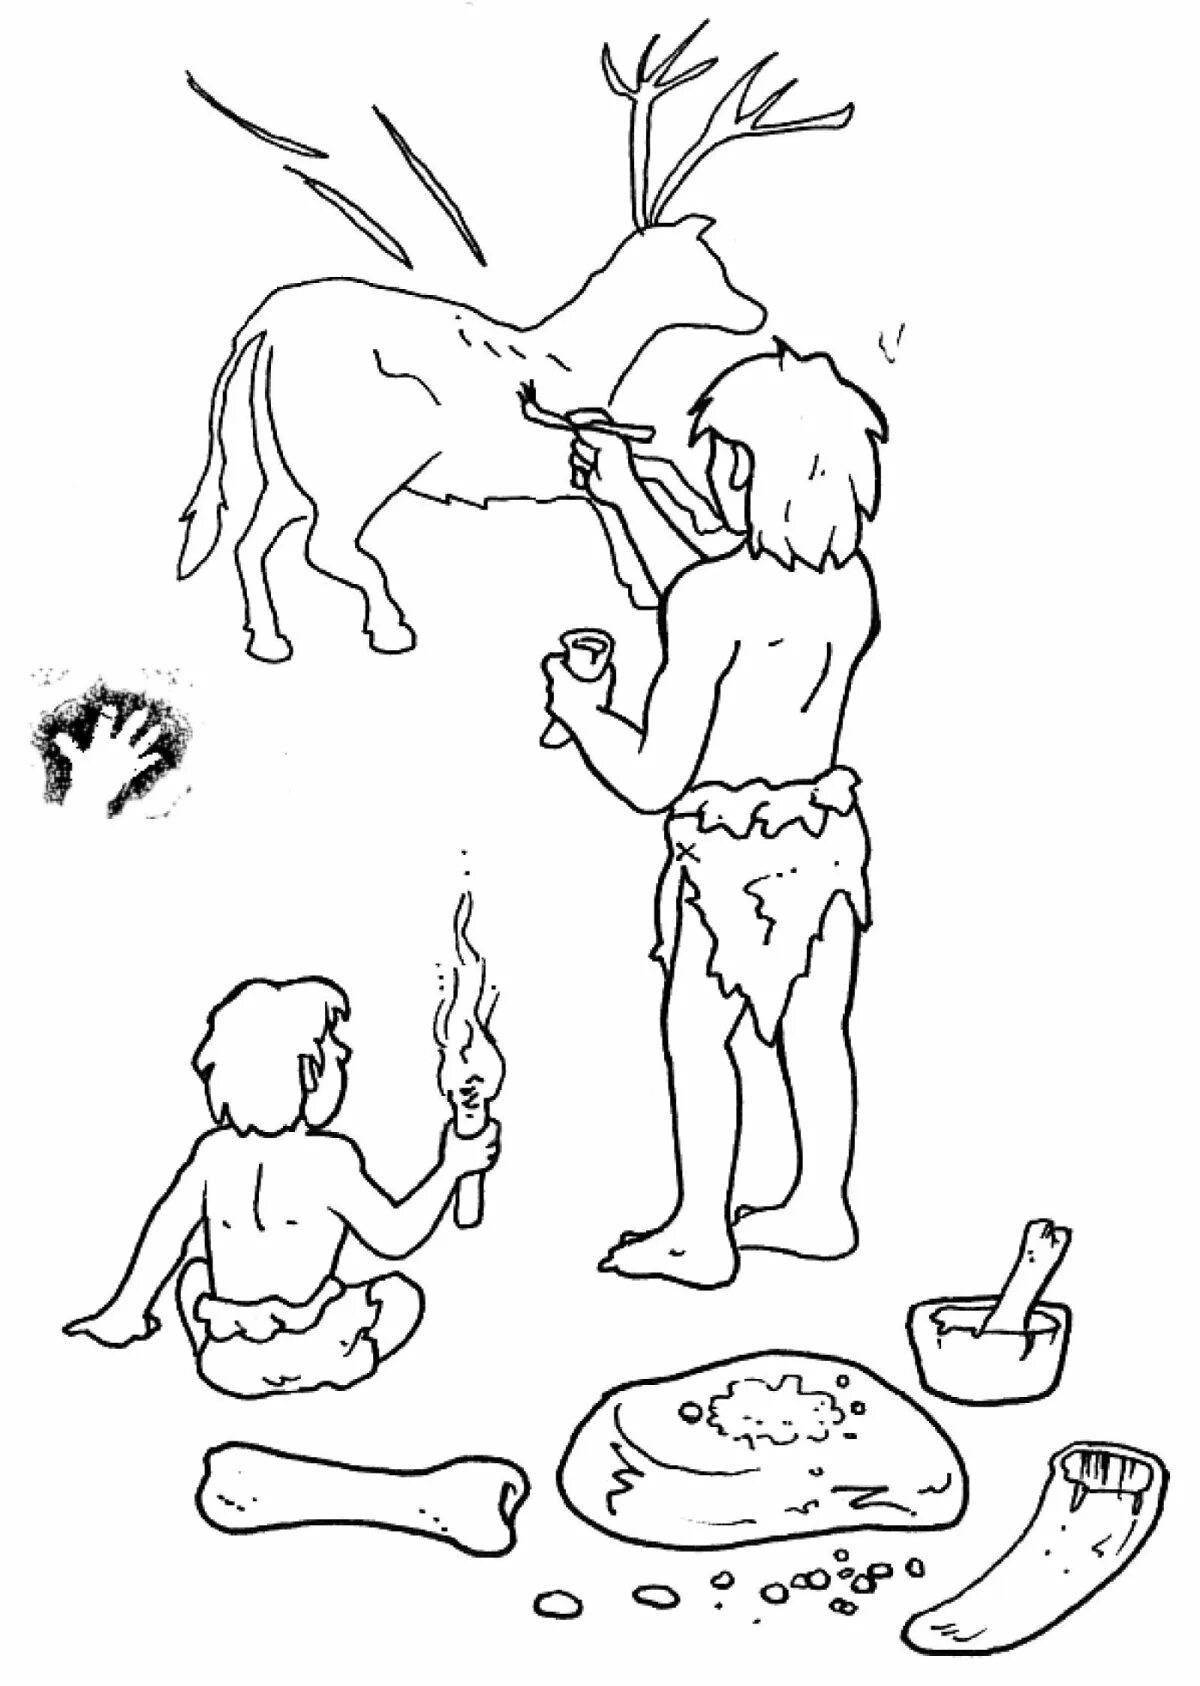 Great prehistoric activities coloring book